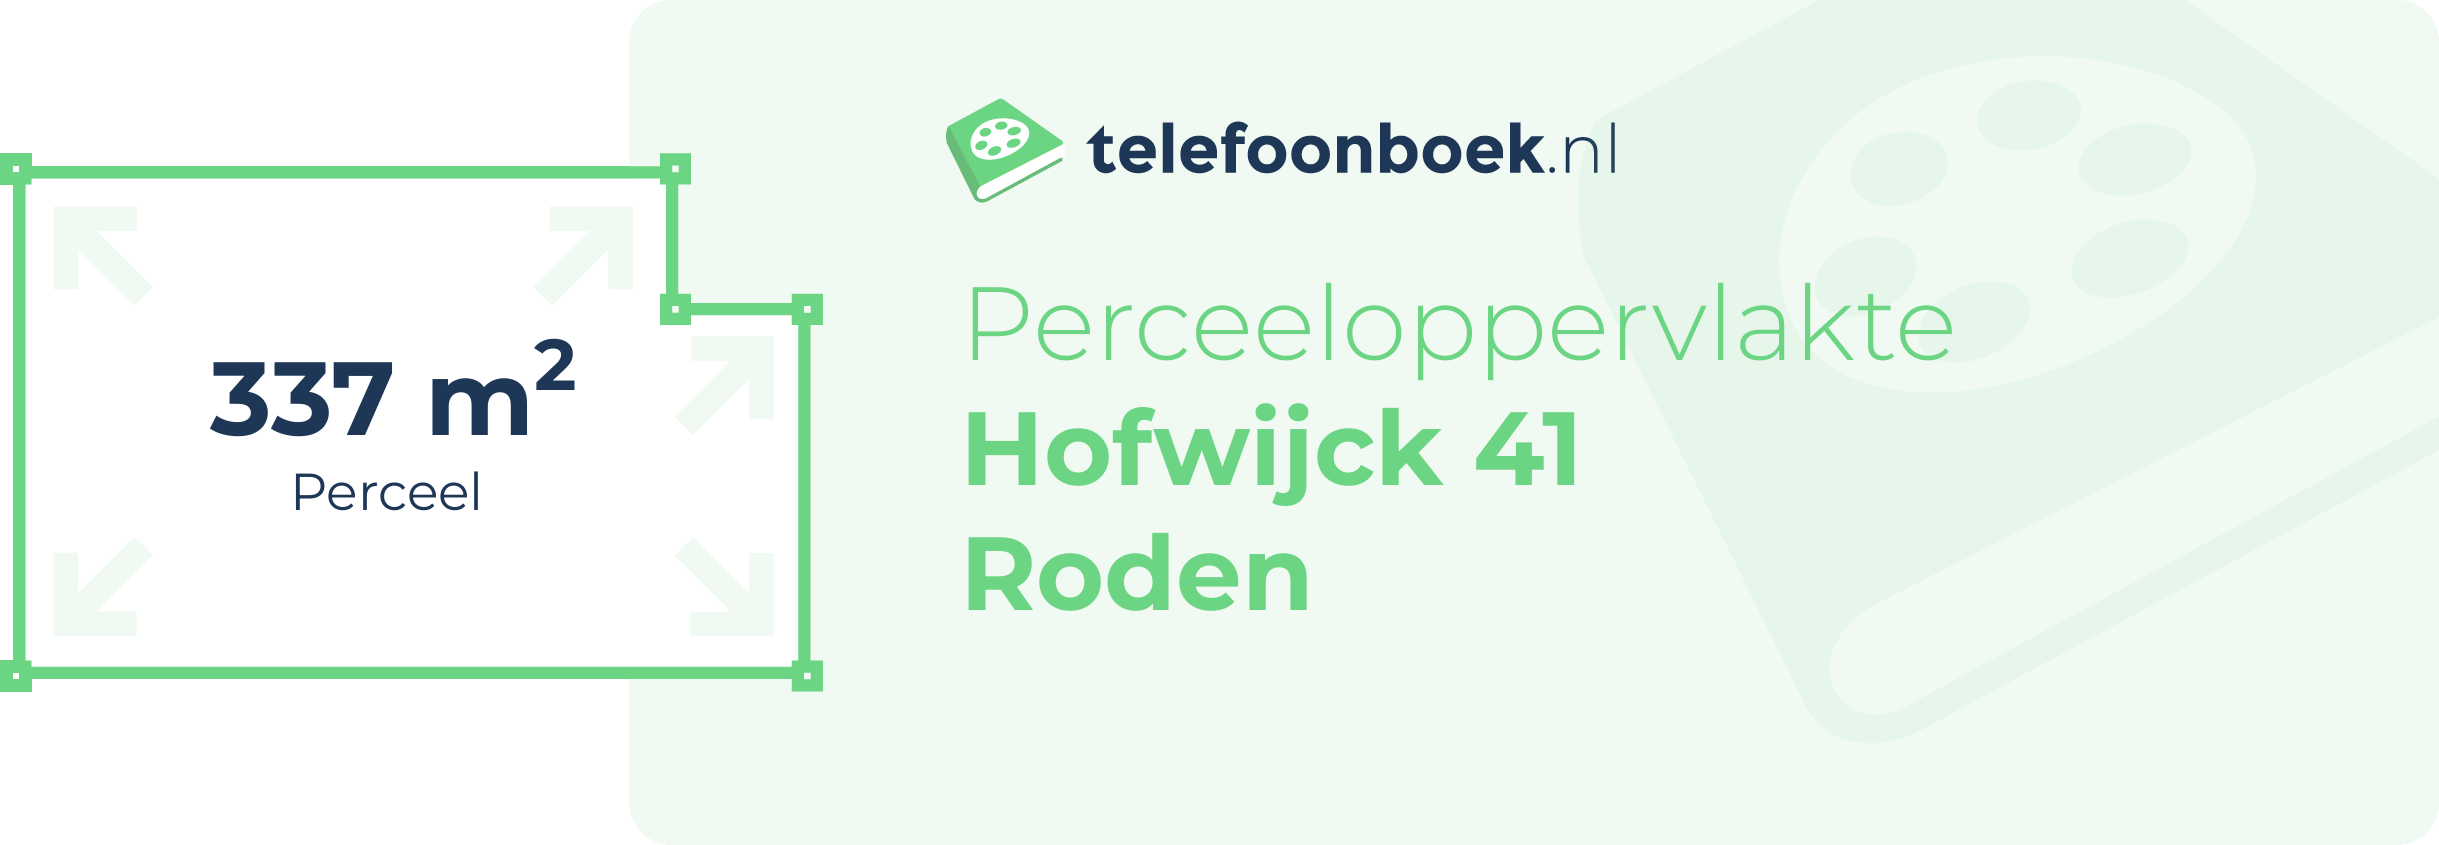 Perceeloppervlakte Hofwijck 41 Roden